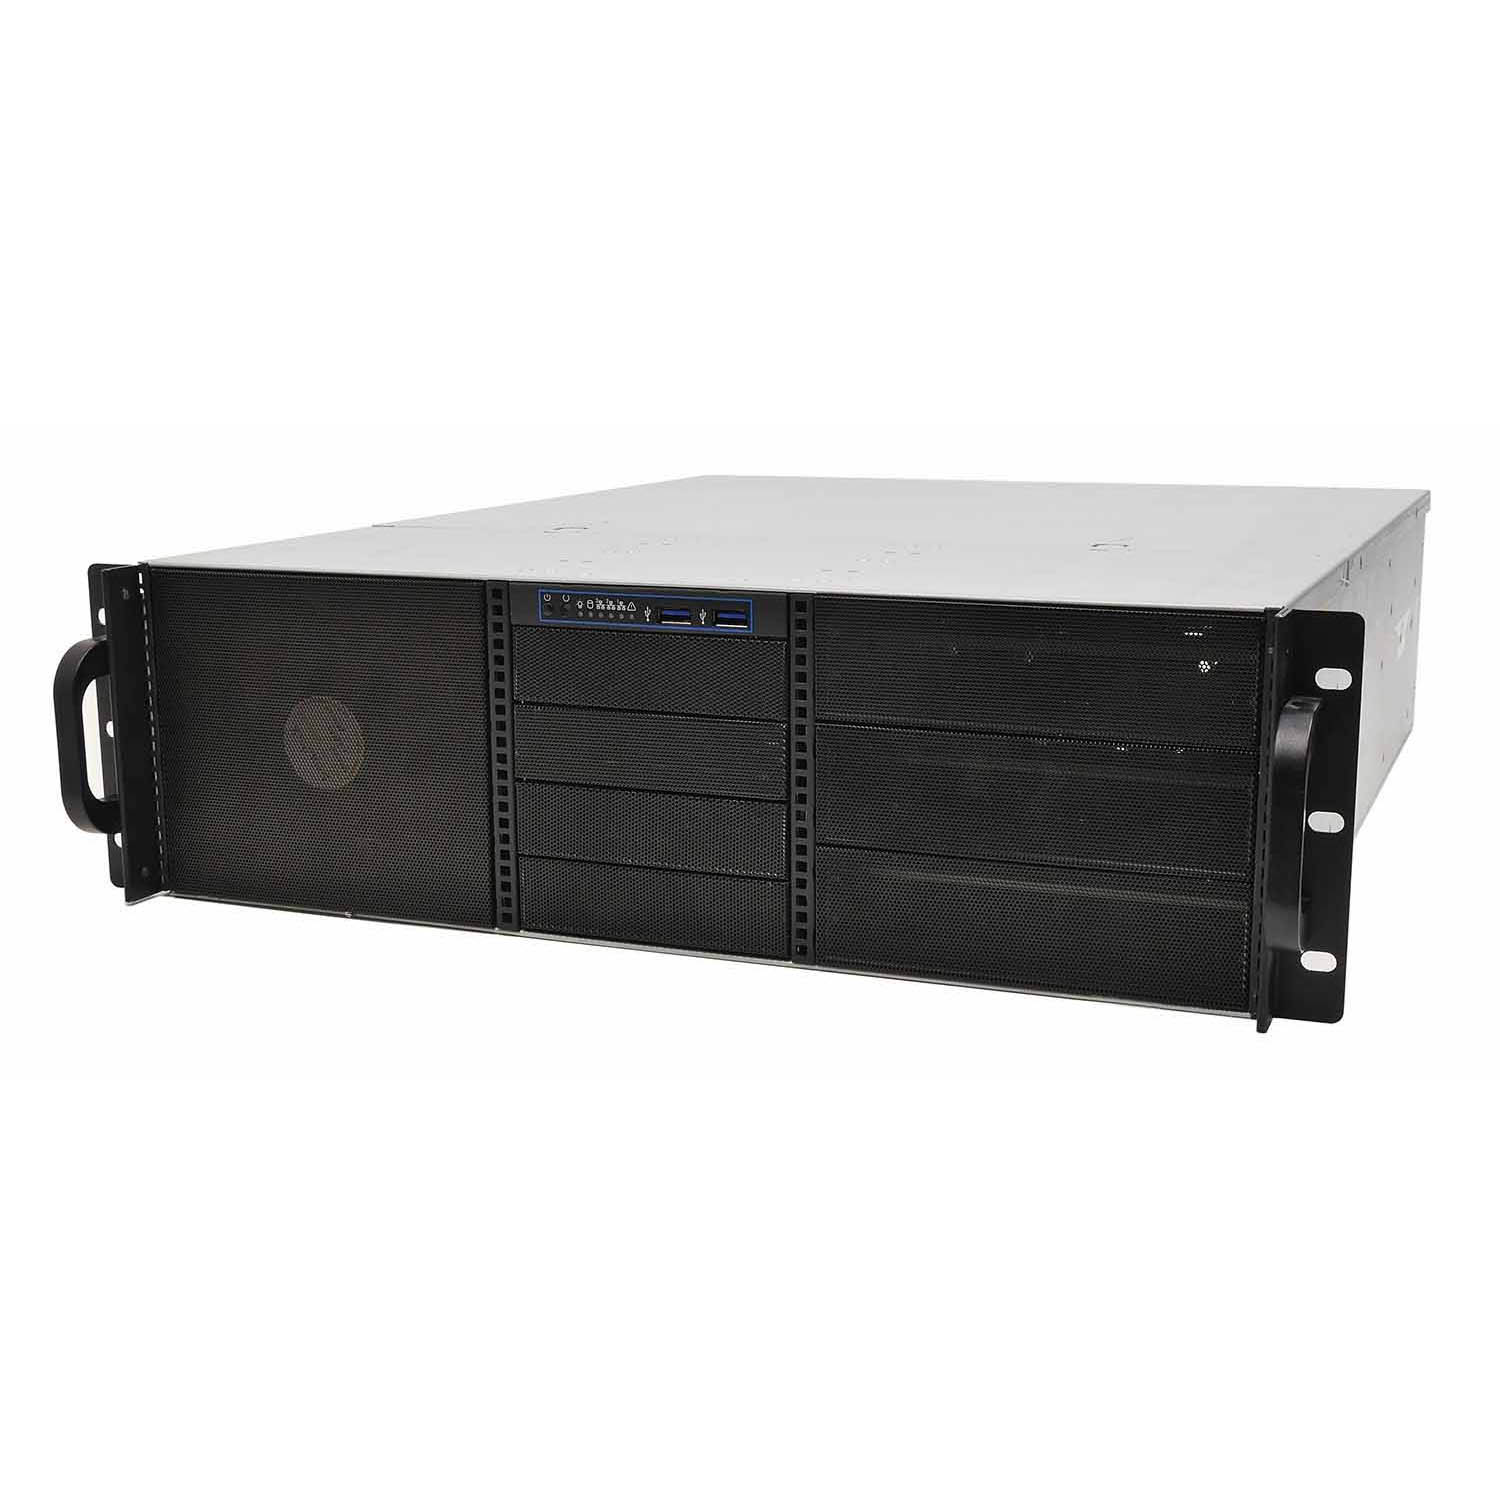 Серверный корпус 3U NR-N3514 2х1200Вт (EATX12x13,6x5.25ext(10x3.5int),4x3.5ext,550мм)черный,NegoRack